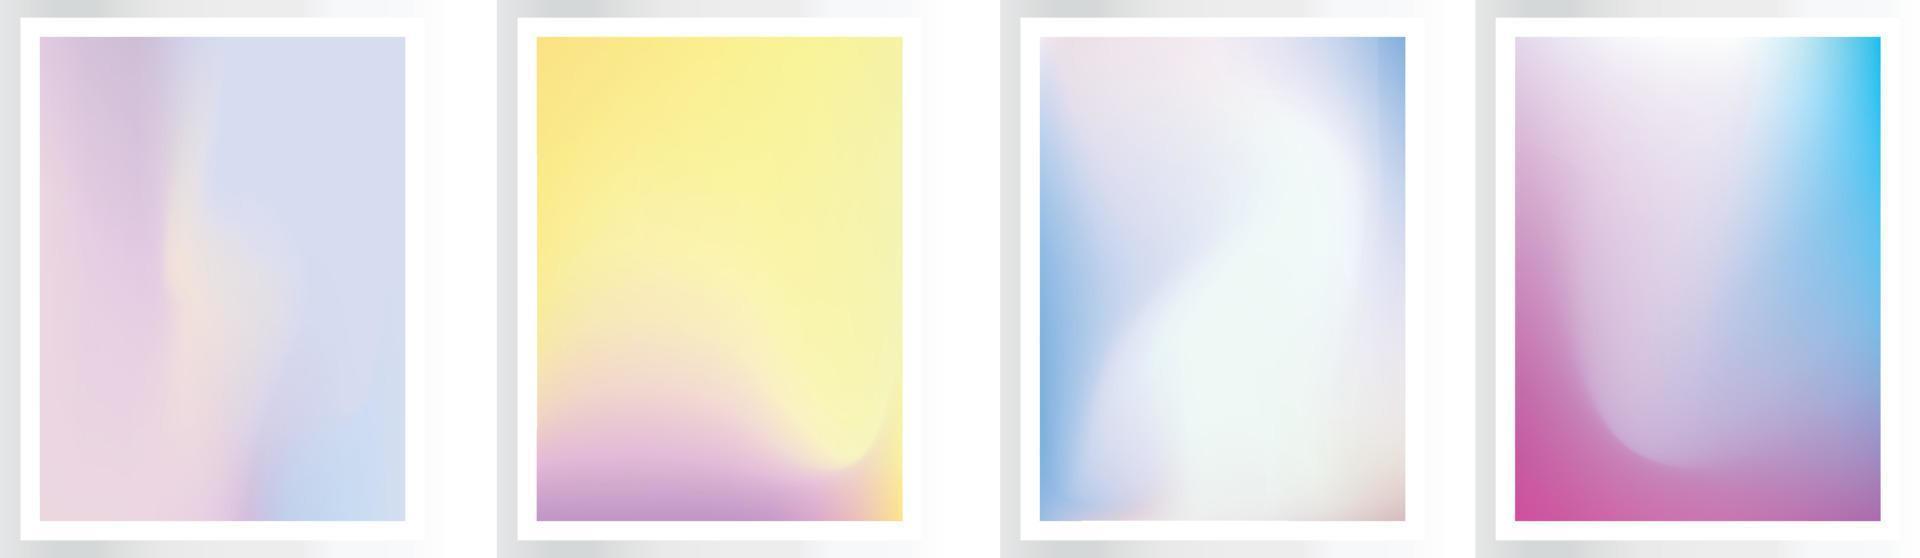 uppsättning av vektor kornig gradienter i pastell färger i rosa blå färger, för täcker, tapeter, branding och Övrig projekt, eps fil